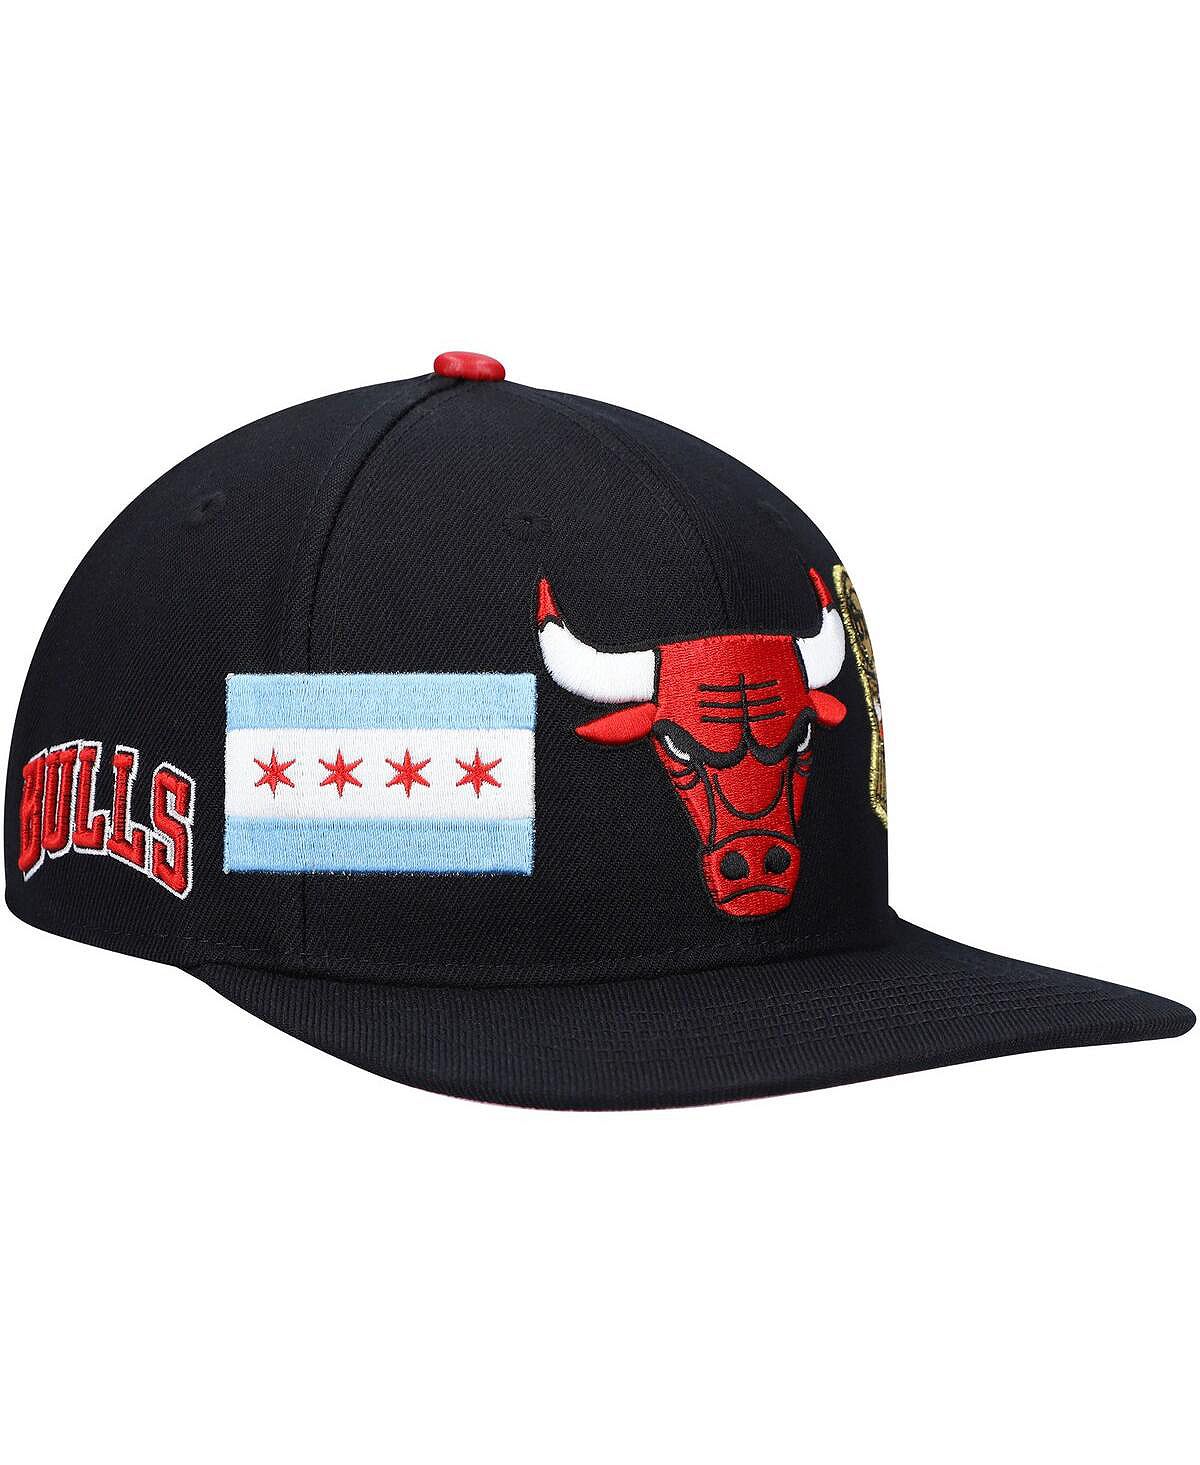 Черная мужская кепка с двойным логотипом Chicago Bulls Snapback Pro Standard